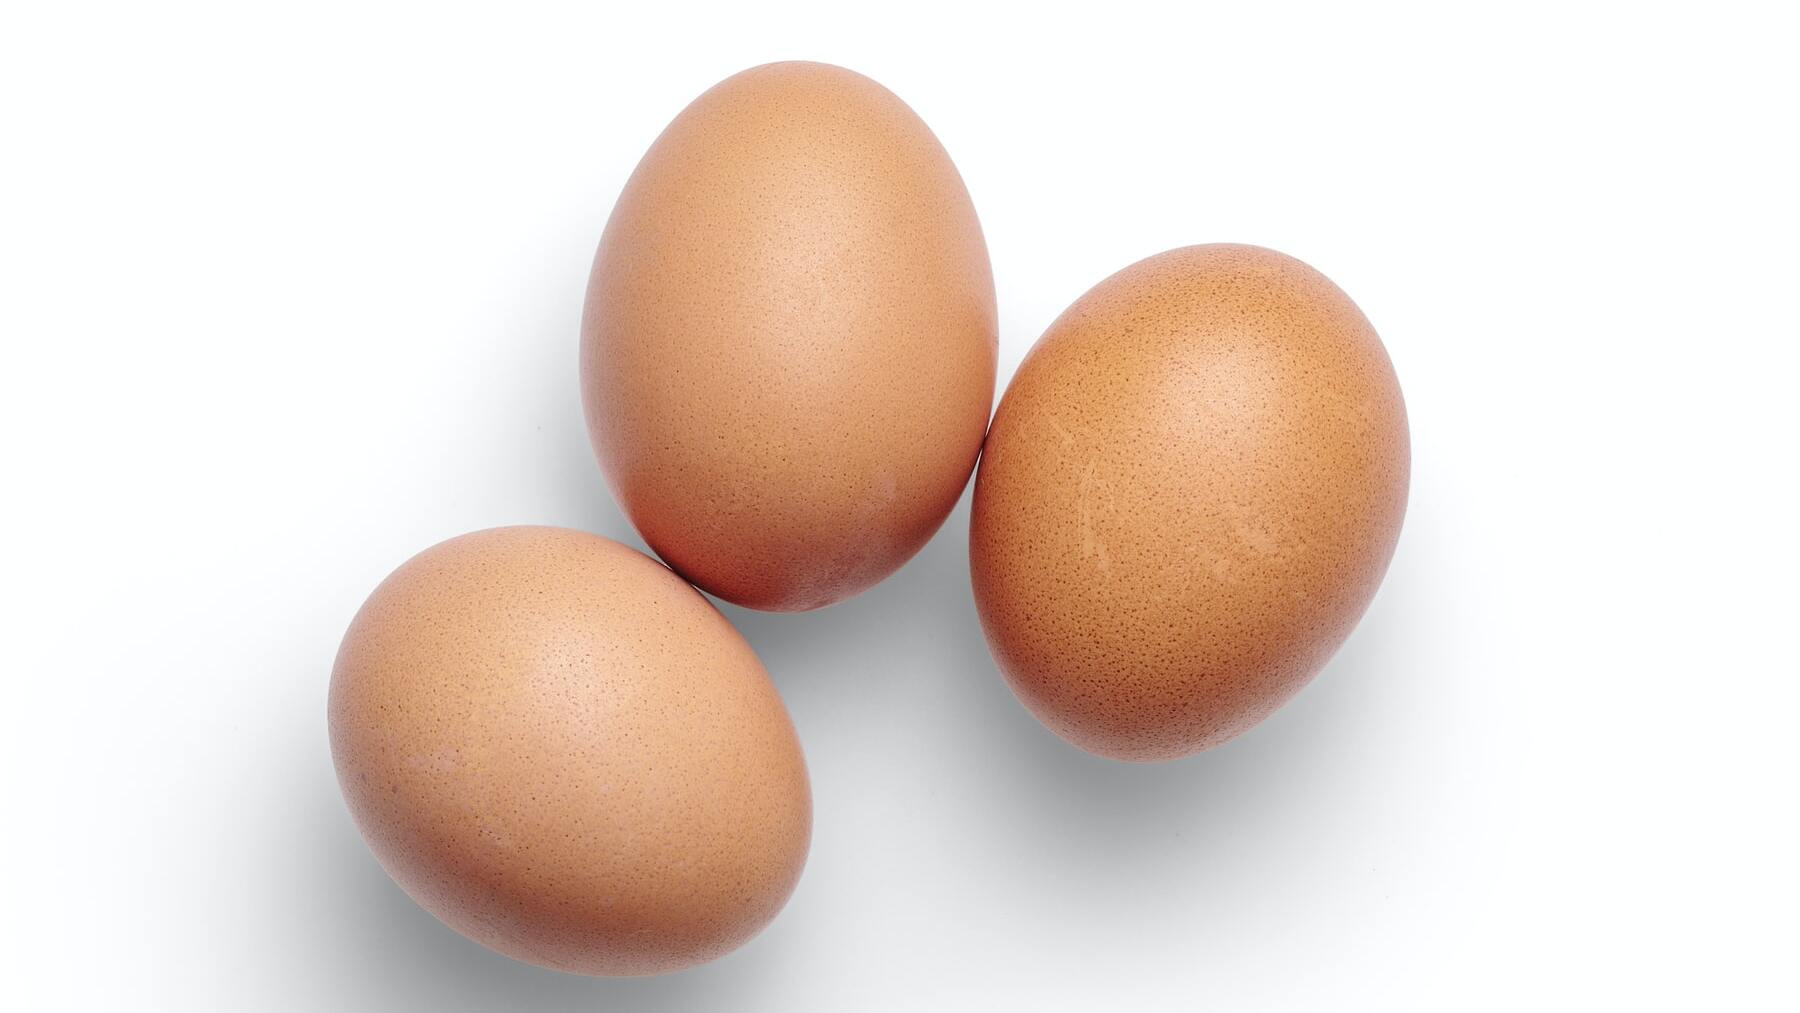 Huevos con manchas en la cáscara: ¿Se pueden comer?